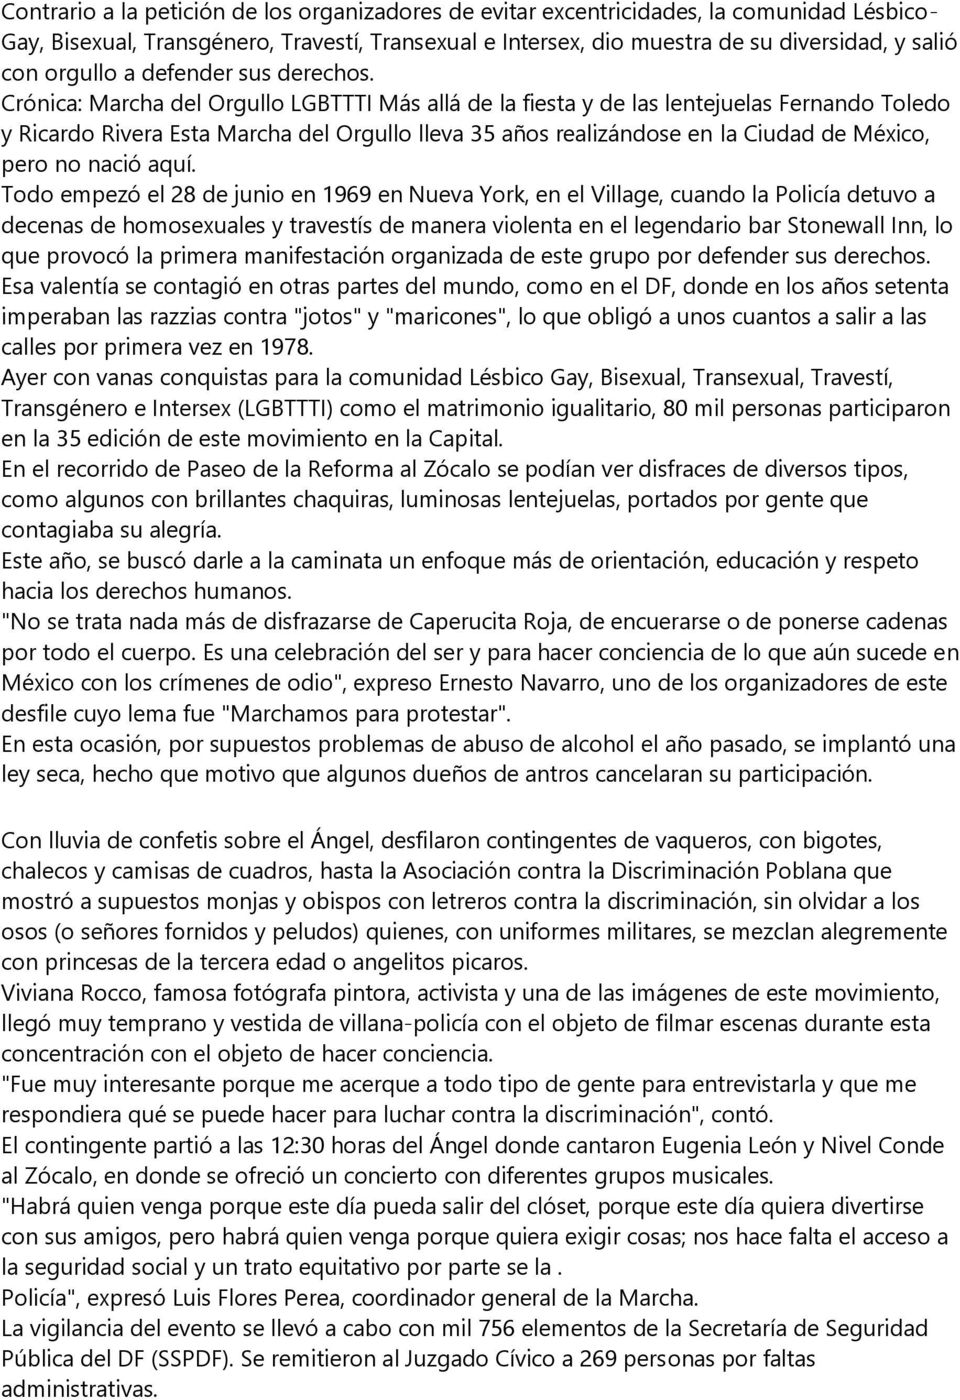 Crónica: Marcha del Orgullo LGBTTTI Más allá de la fiesta y de las lentejuelas Fernando Toledo y Ricardo Rivera Esta Marcha del Orgullo lleva 35 años realizándose en la Ciudad de México, pero no